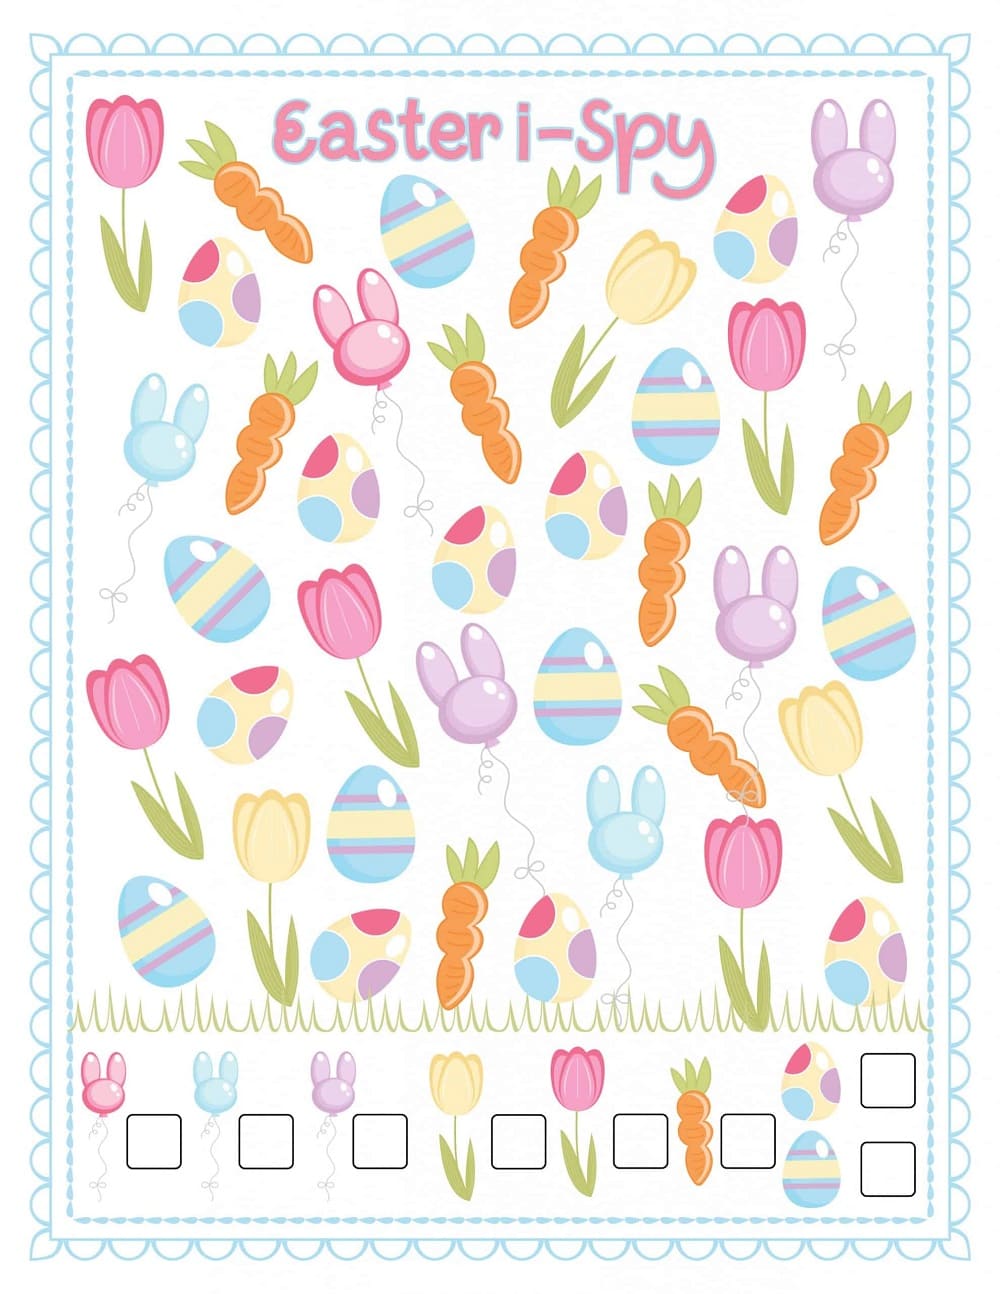 Printable Easter I Spy Image